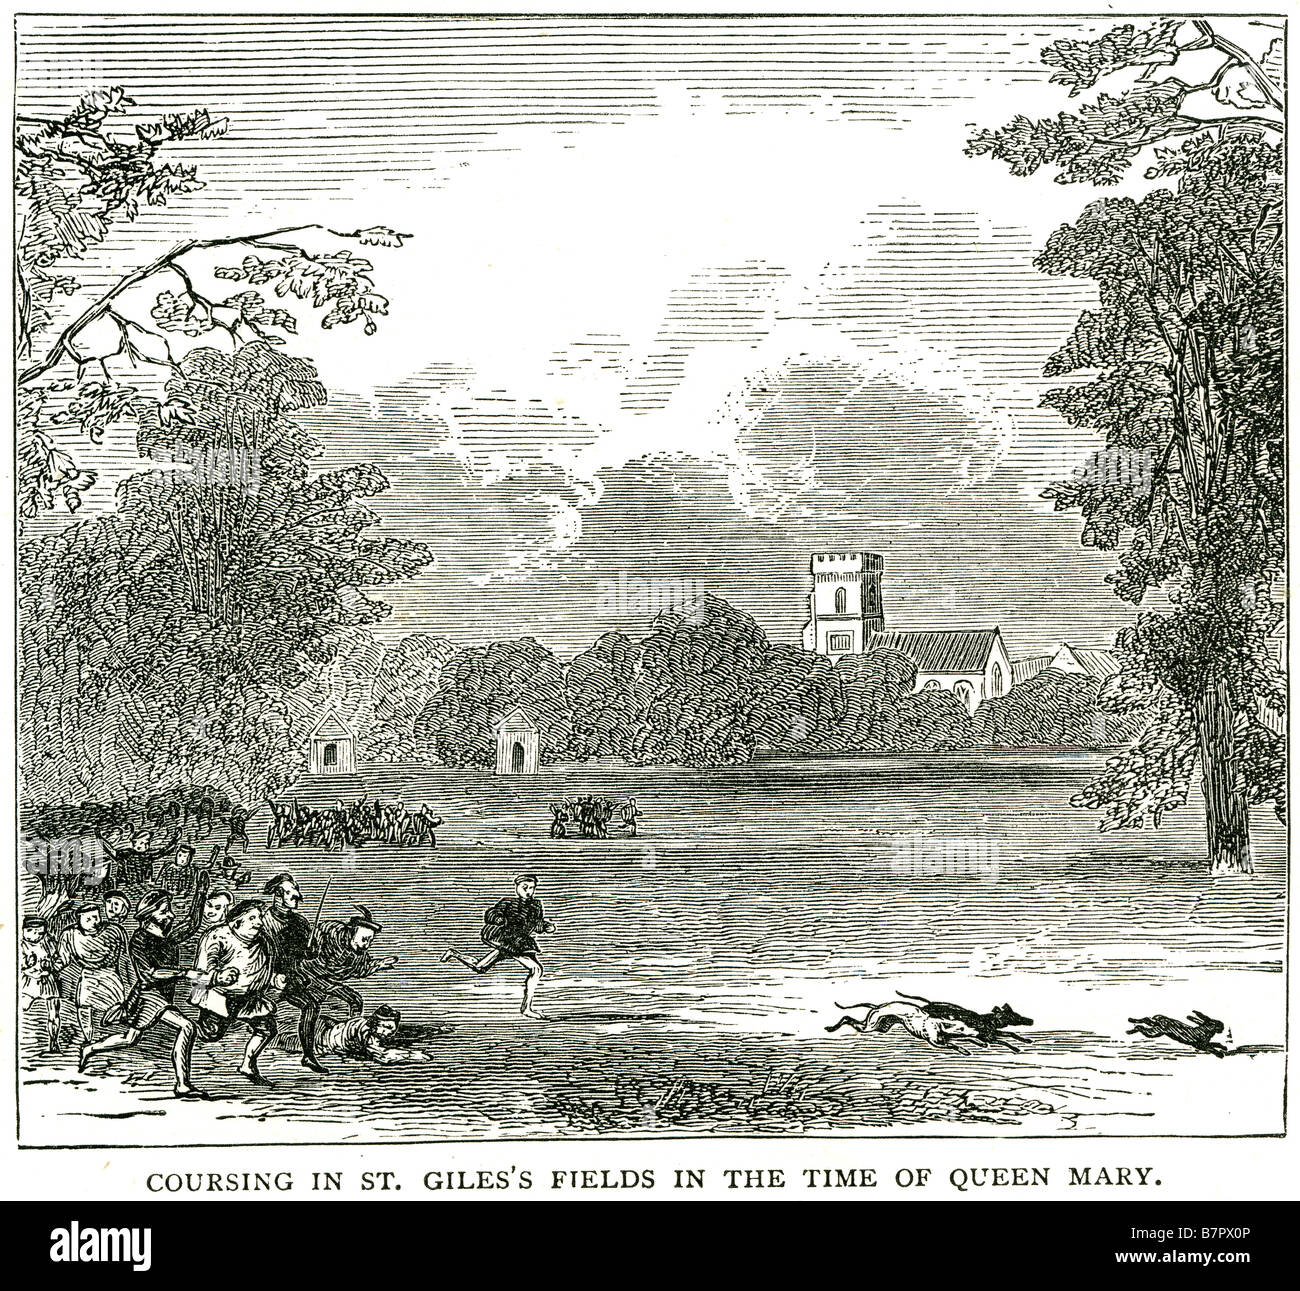 Situés à st. gile's champs dans l'époque de la reine Mary qui est la poursuite de jeu ou d'autres animaux par des chiens -surtout Grayho Banque D'Images